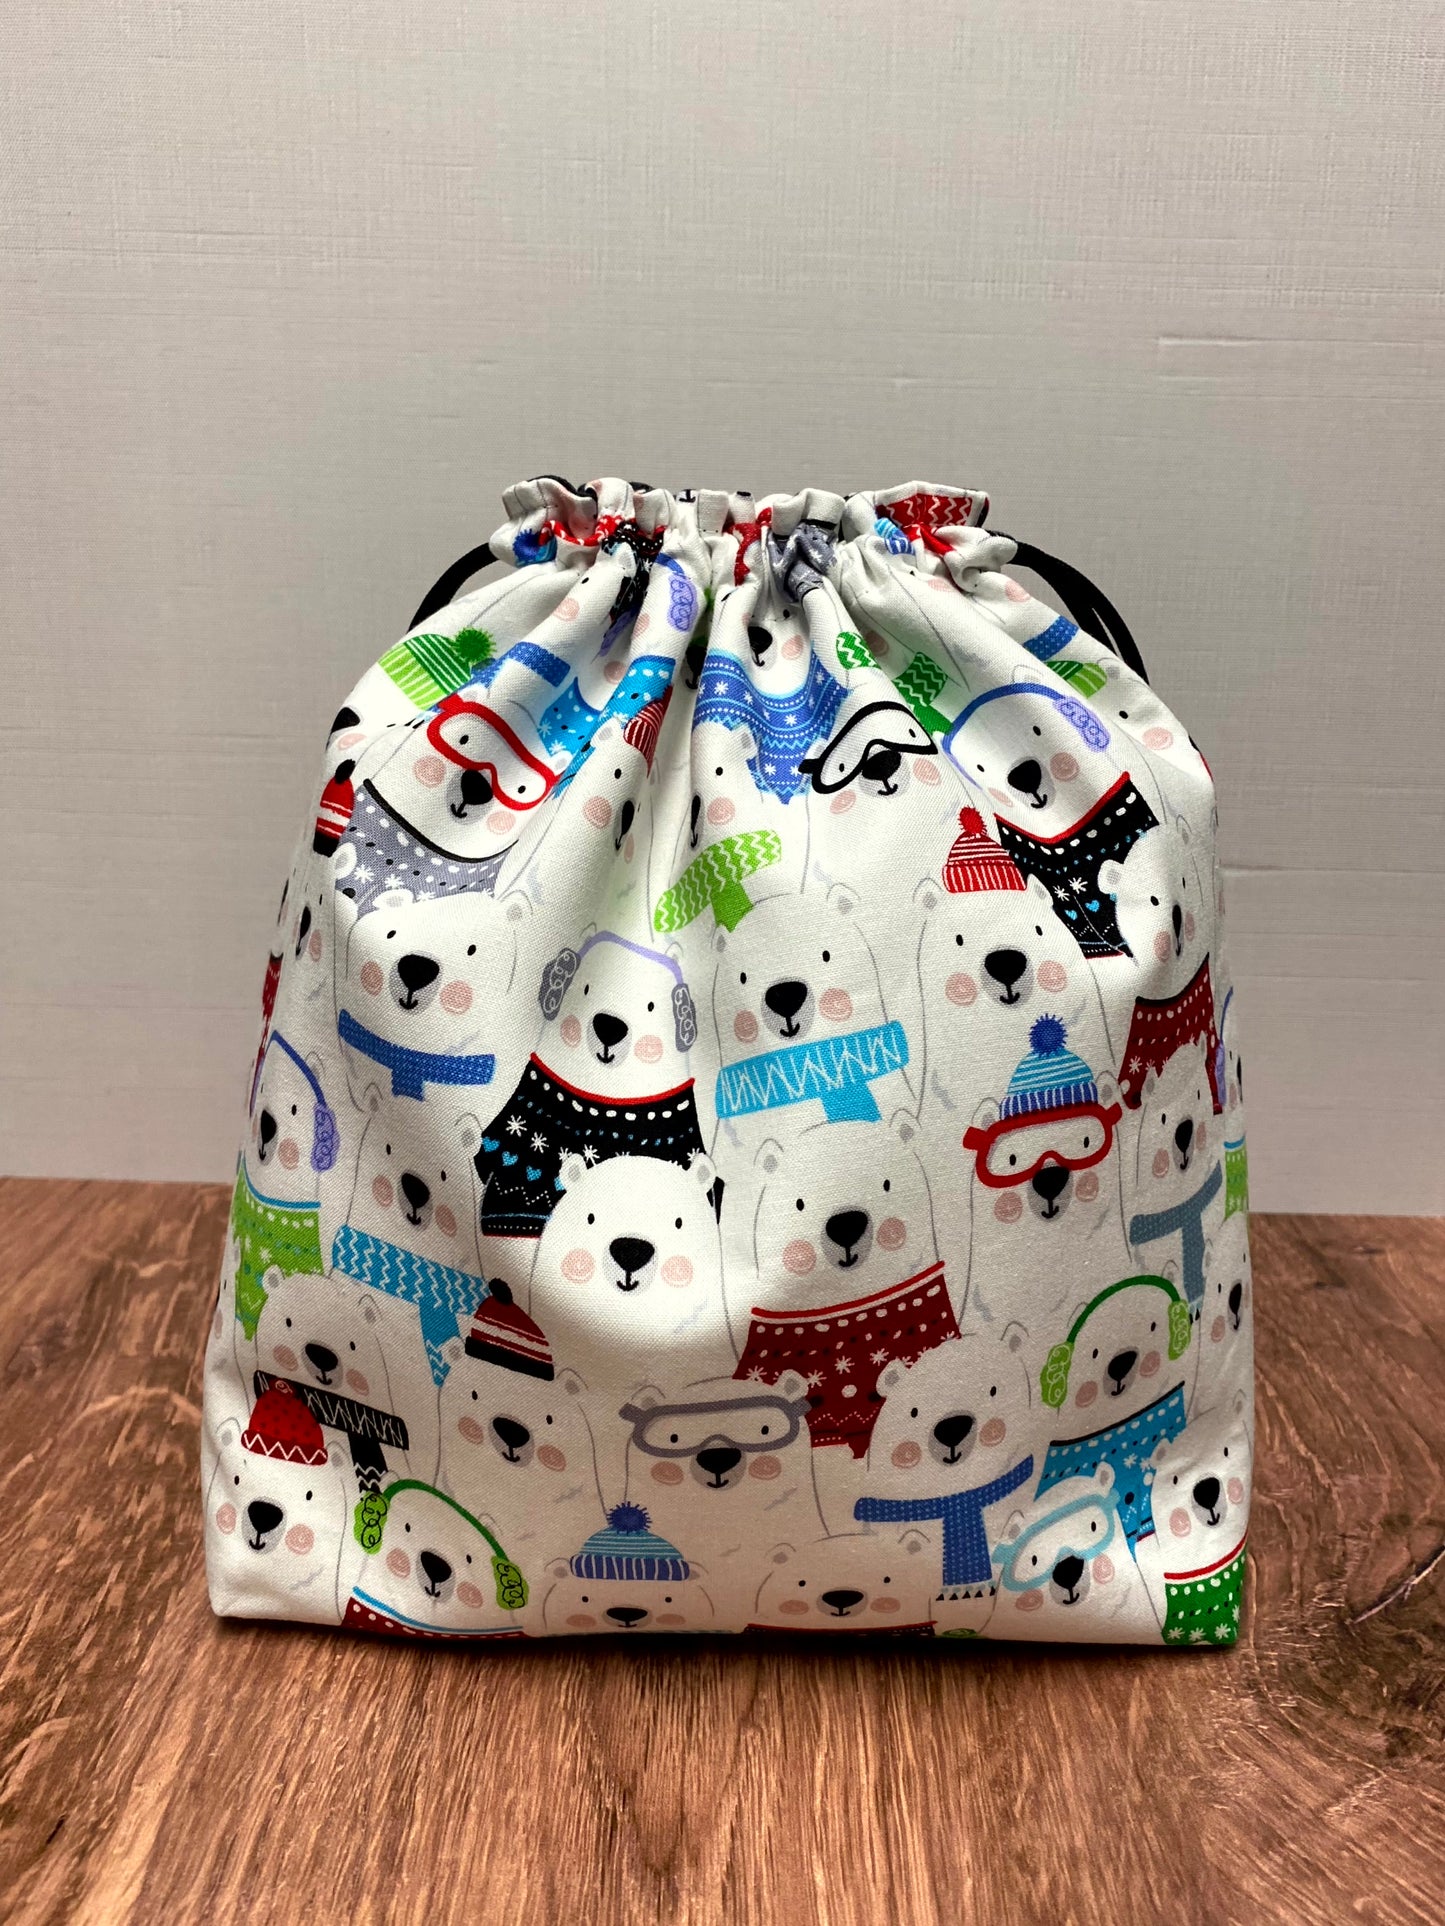 Polar Bear Project Bag - Drawstring Bag – Crochet Bag - Knitting Bag - Cross Stitch Bag - Christmas - Holiday - Bears